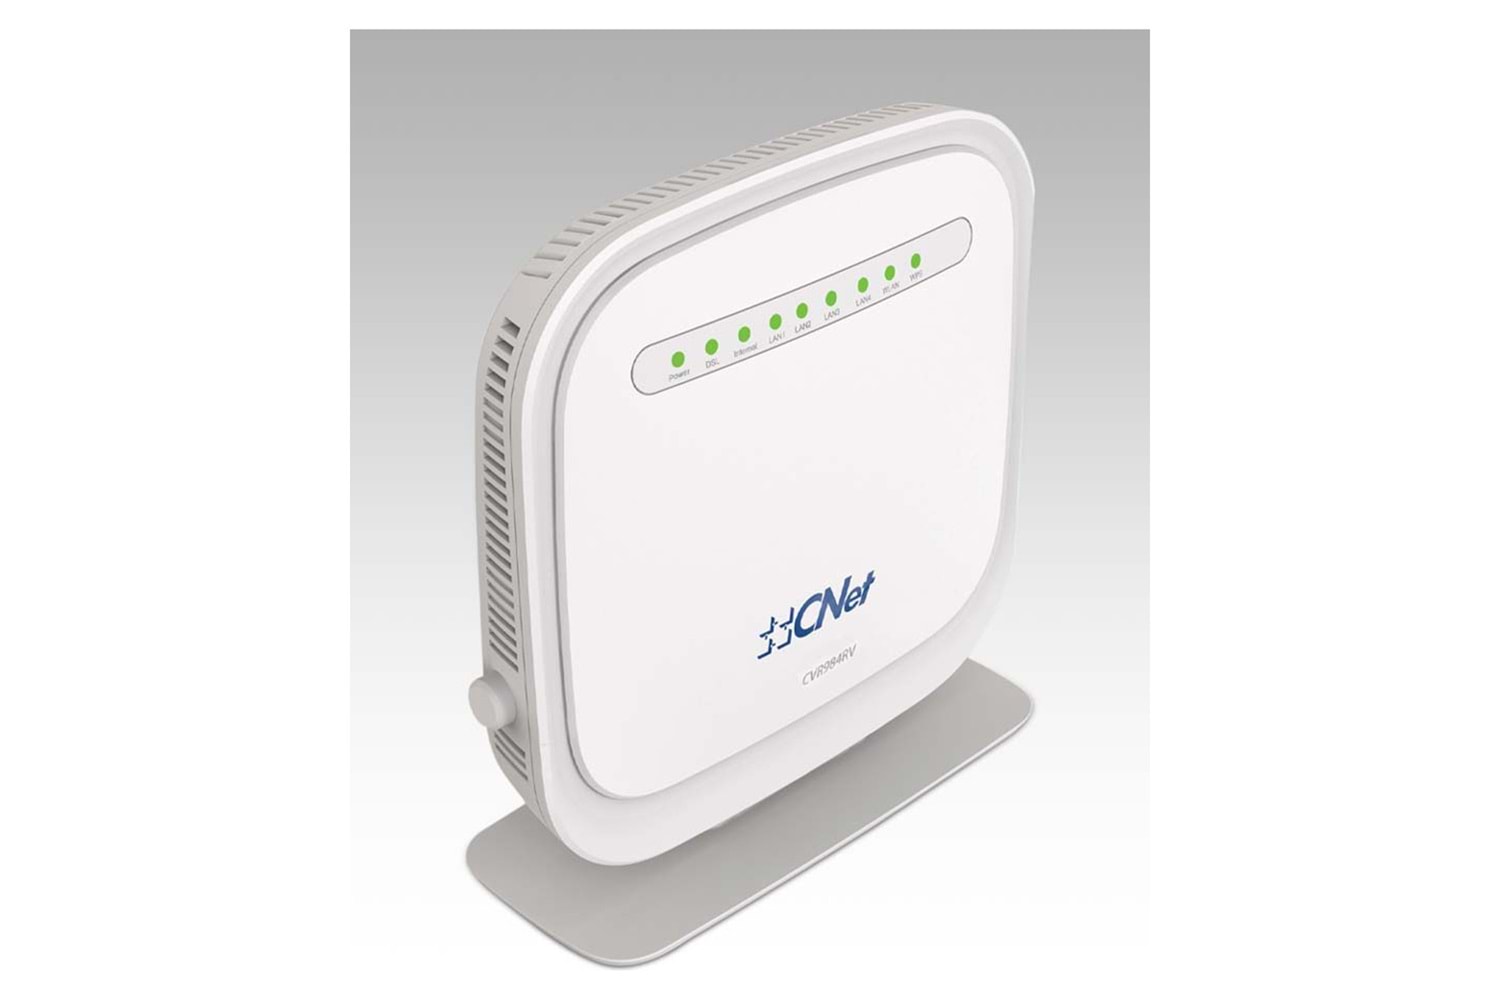 Cnet CVR984RV 4 Port 300 Mbps Wireless N Vdsl2-Adsl2 Modem Router